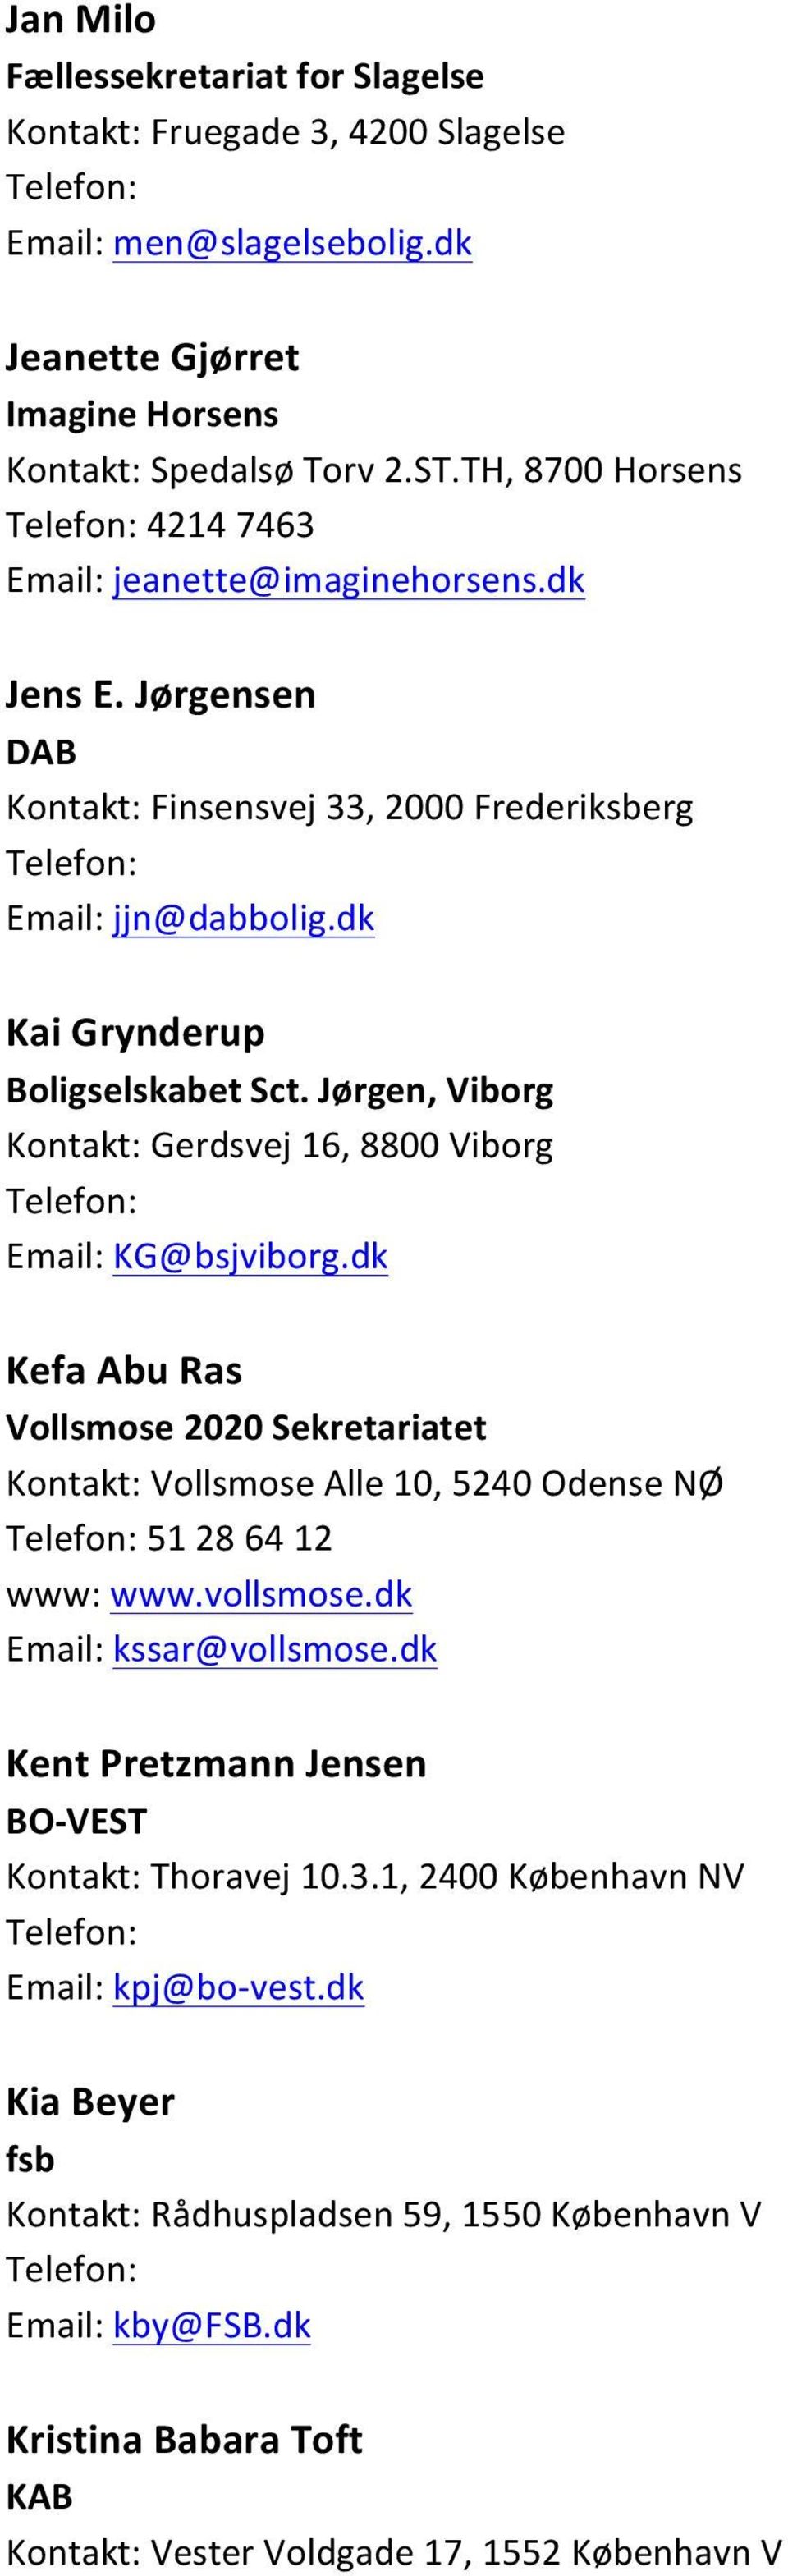 Jørgen, Viborg Kontakt: Gerdsvej 16, 8800 Viborg Email: KG@bsjviborg.dk Kefa Abu Ras Kontakt: Vollsmose Alle 10, 5240 Odense NØ 51 28 64 12 www: www.vollsmose.